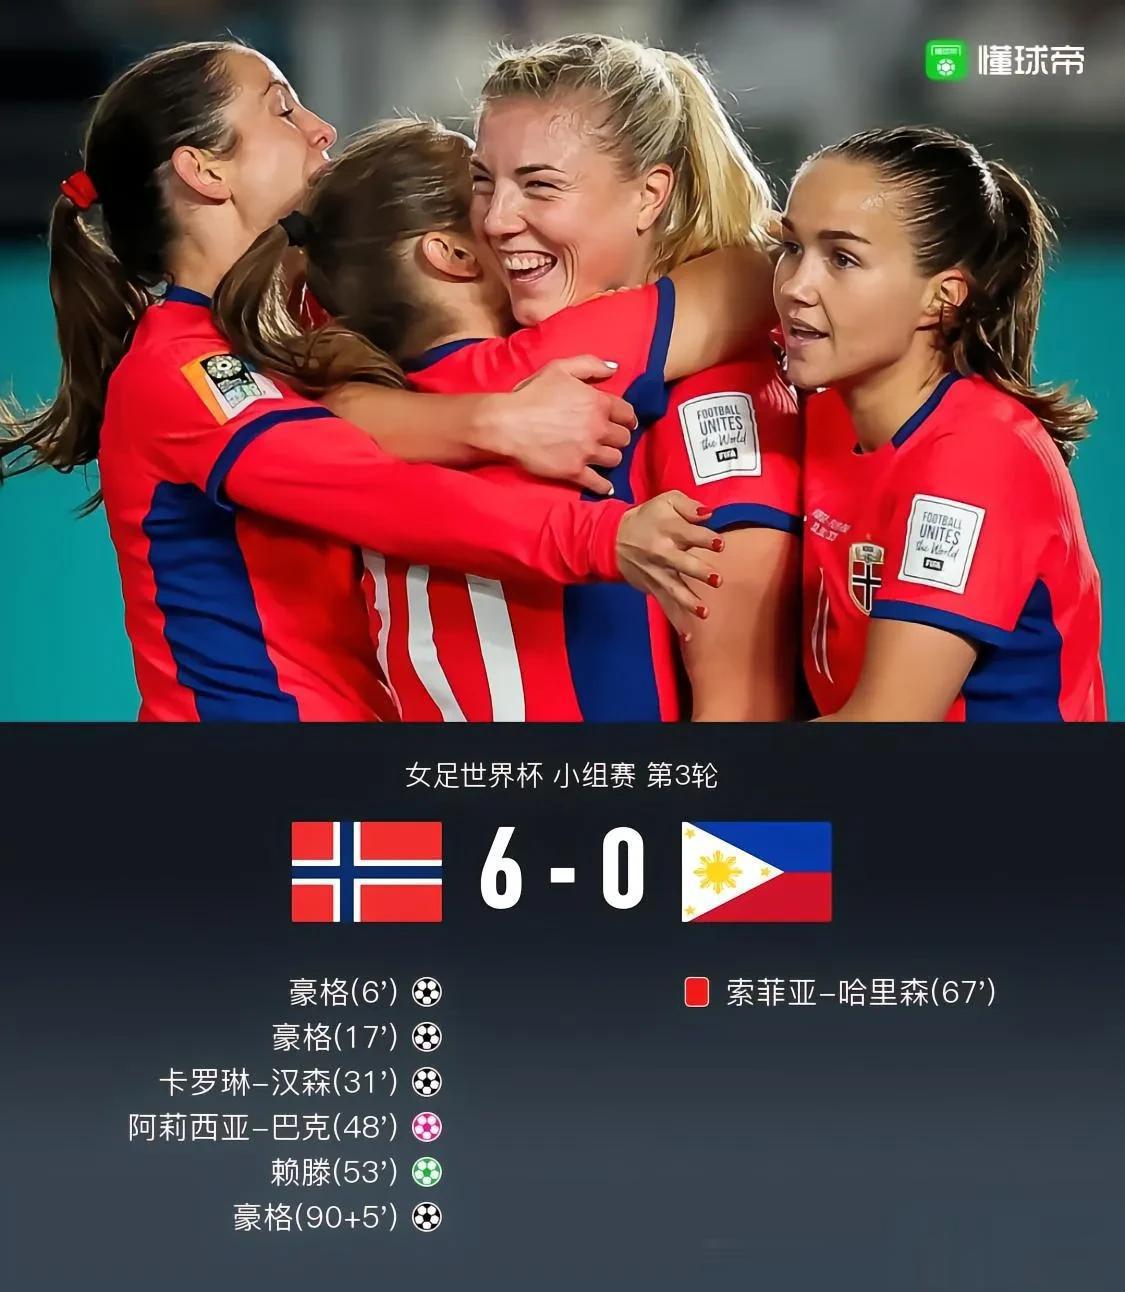 6-0，挪威女足完成自我救赎，顺利晋级淘汰赛！
2023女足世界杯A组的比赛已结